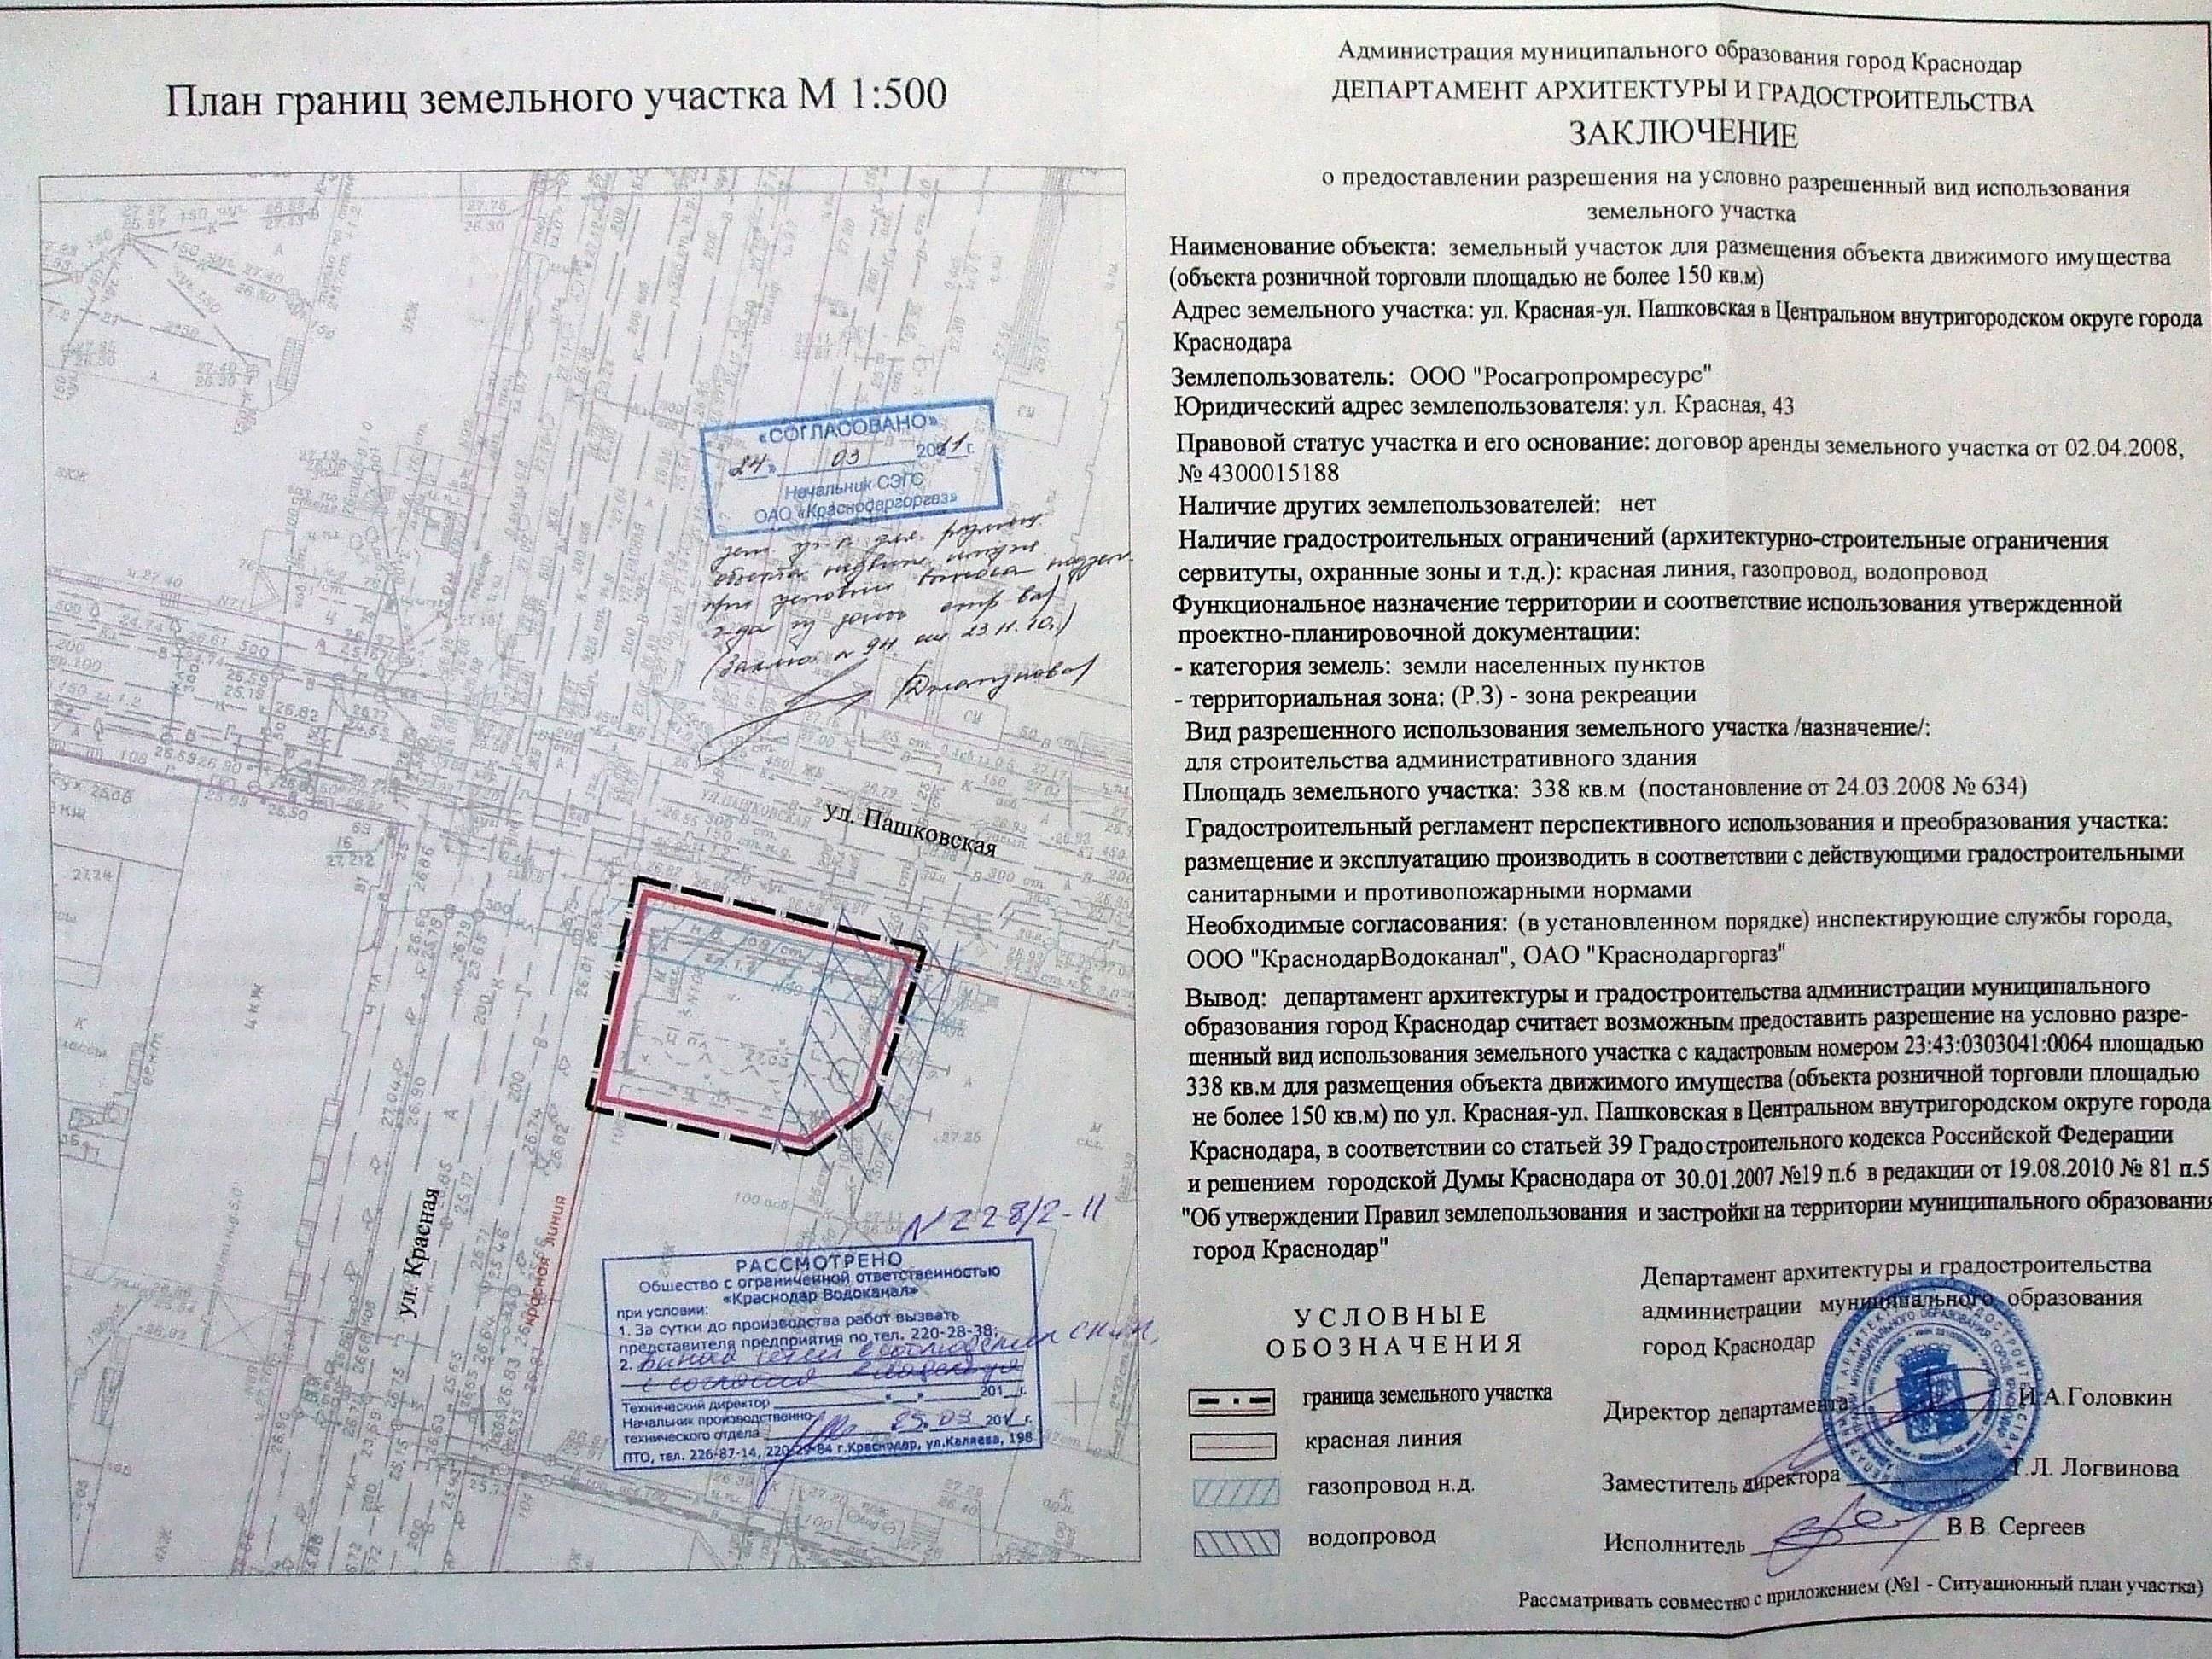 Договор аренды земельного участка, находящегося в общей долевой собственности - образец 2022 года. договор-образец.ру